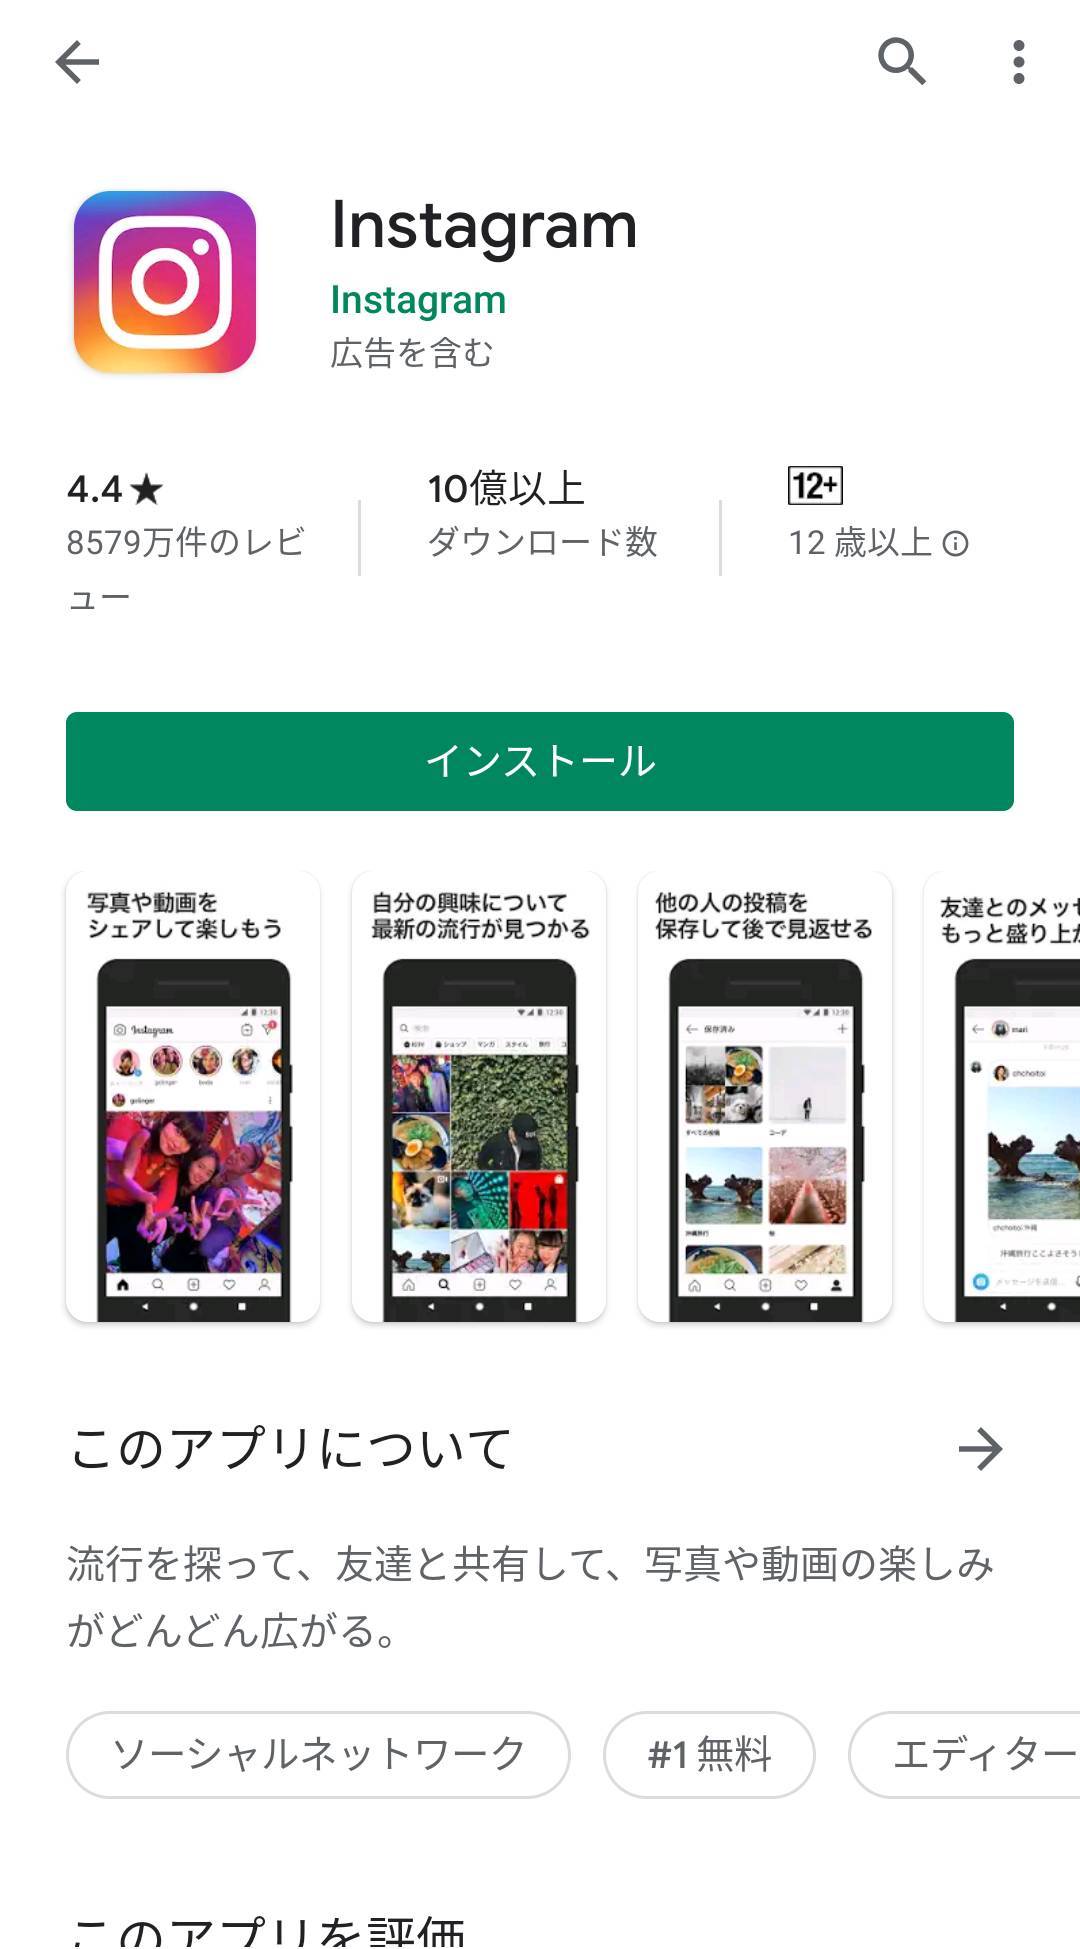 Androidスマホ アプリのダウンロード アップデート アンインストール方法 Appliv Topics